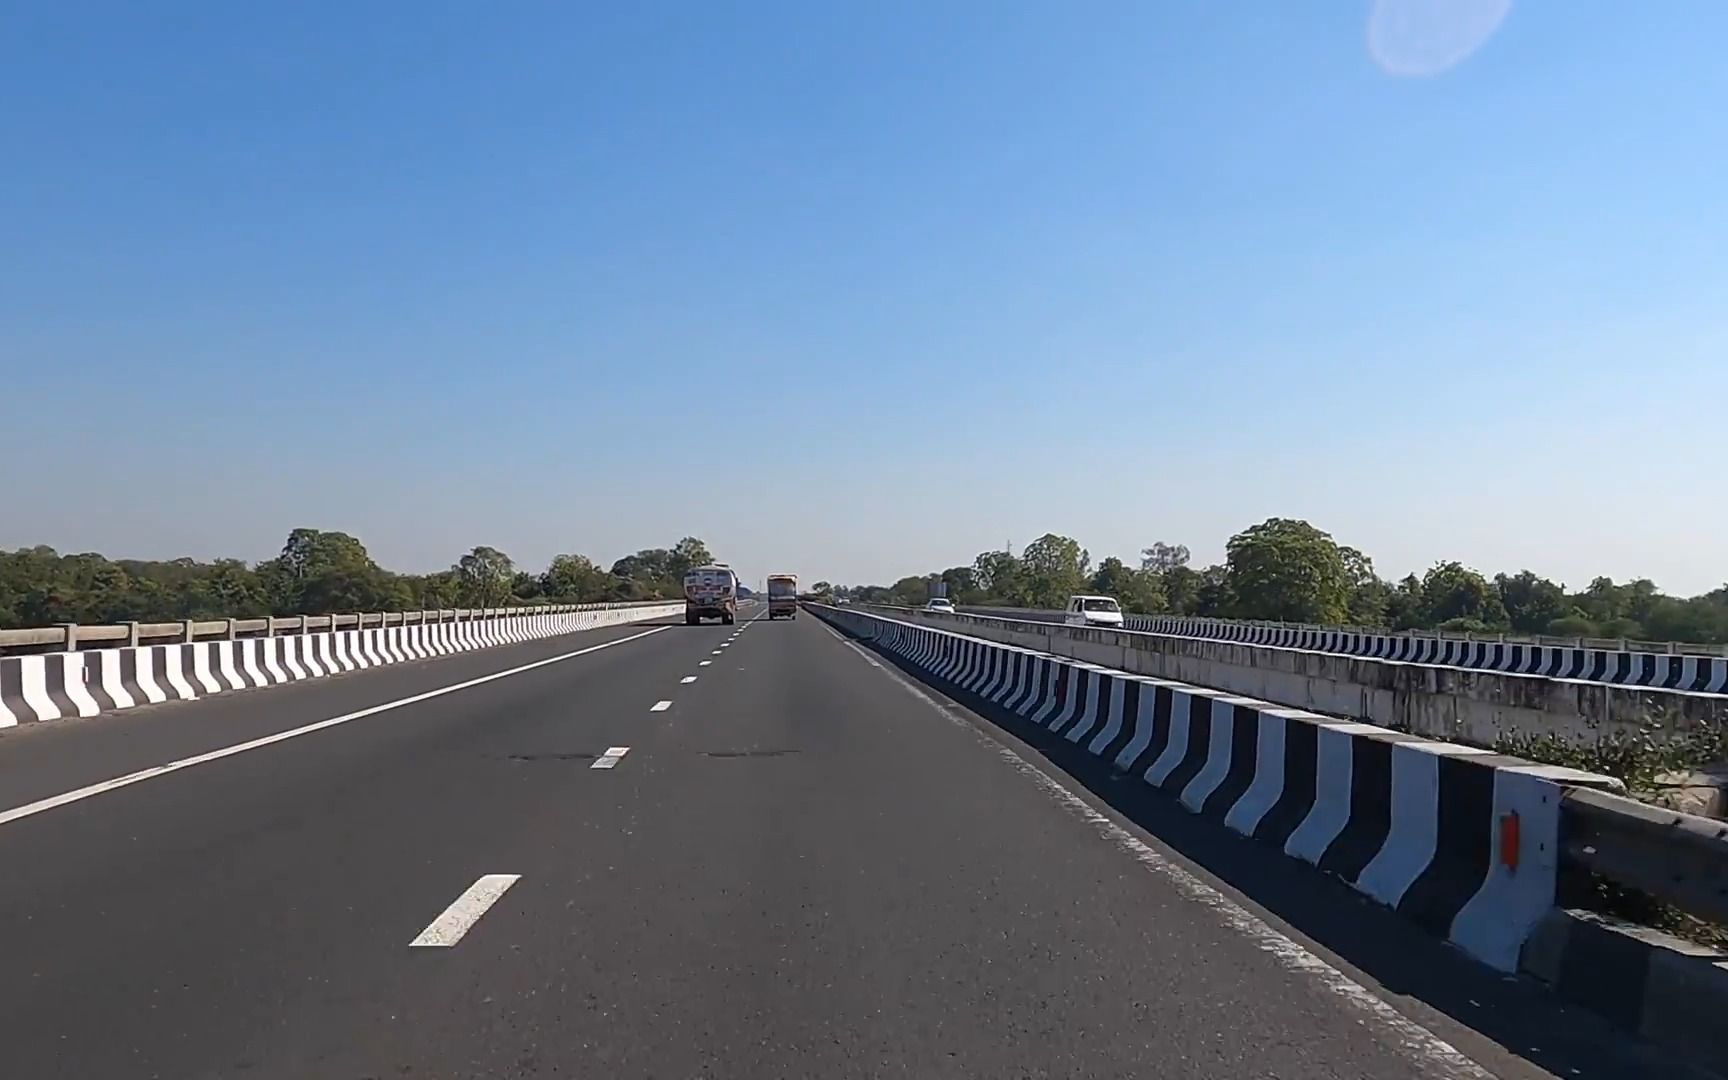 印度高速公路图片图片